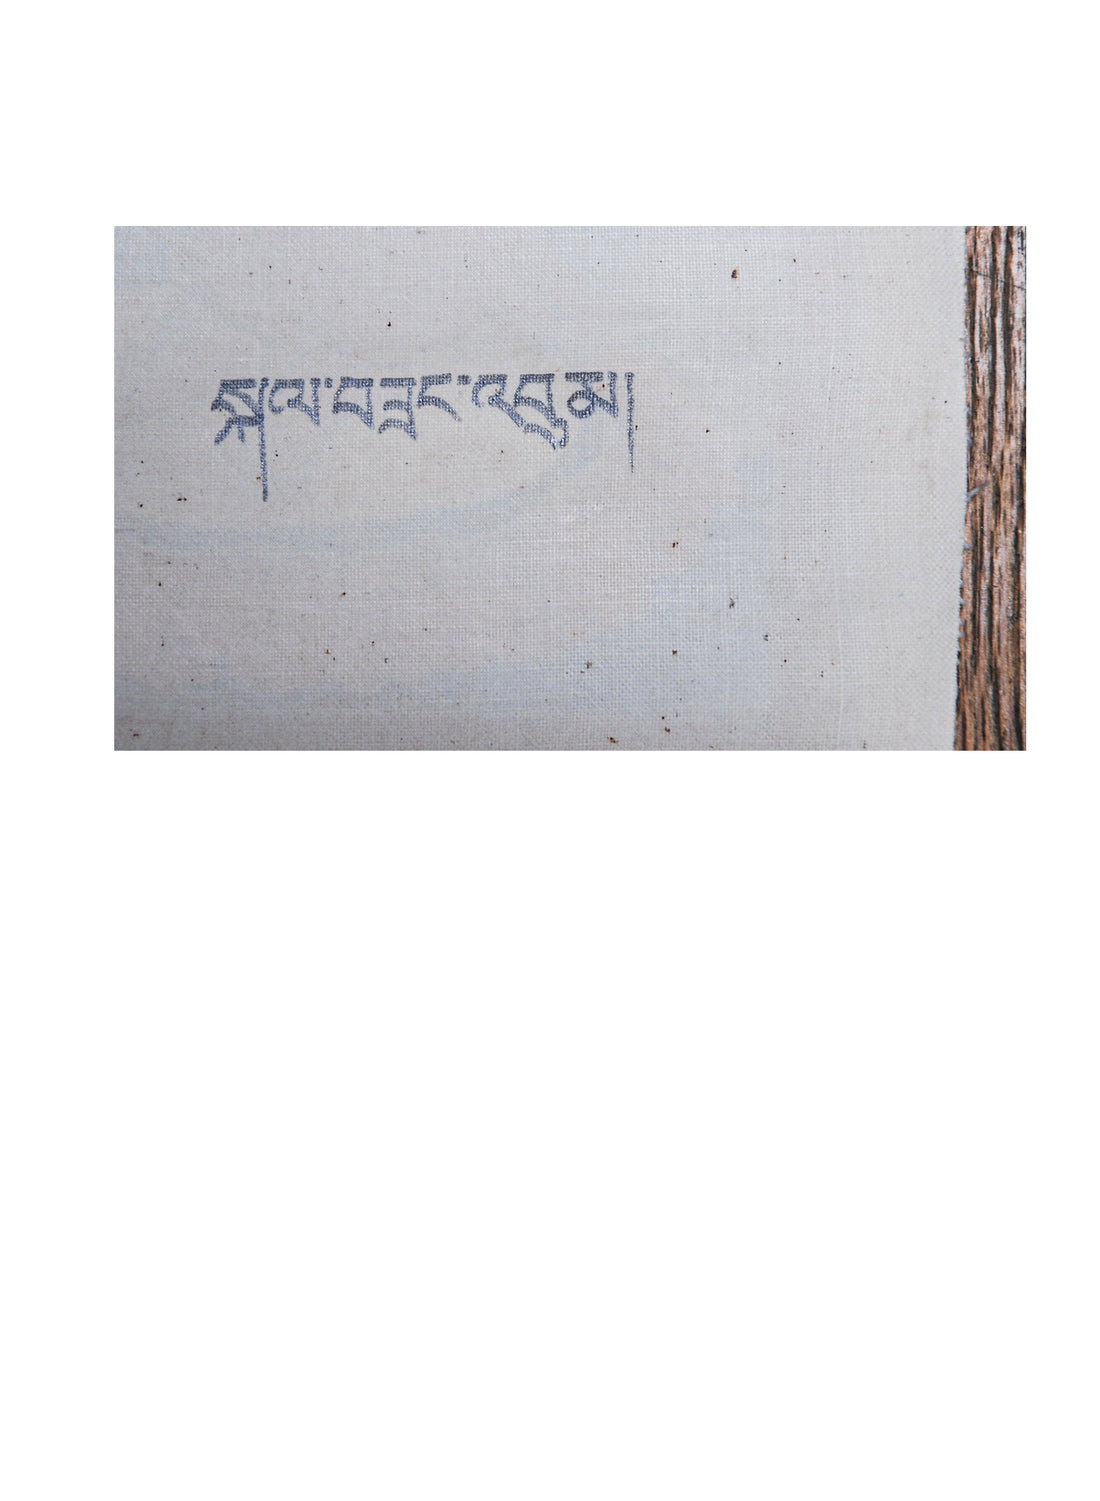 Ga Zangben Manjushri Bodhisattva